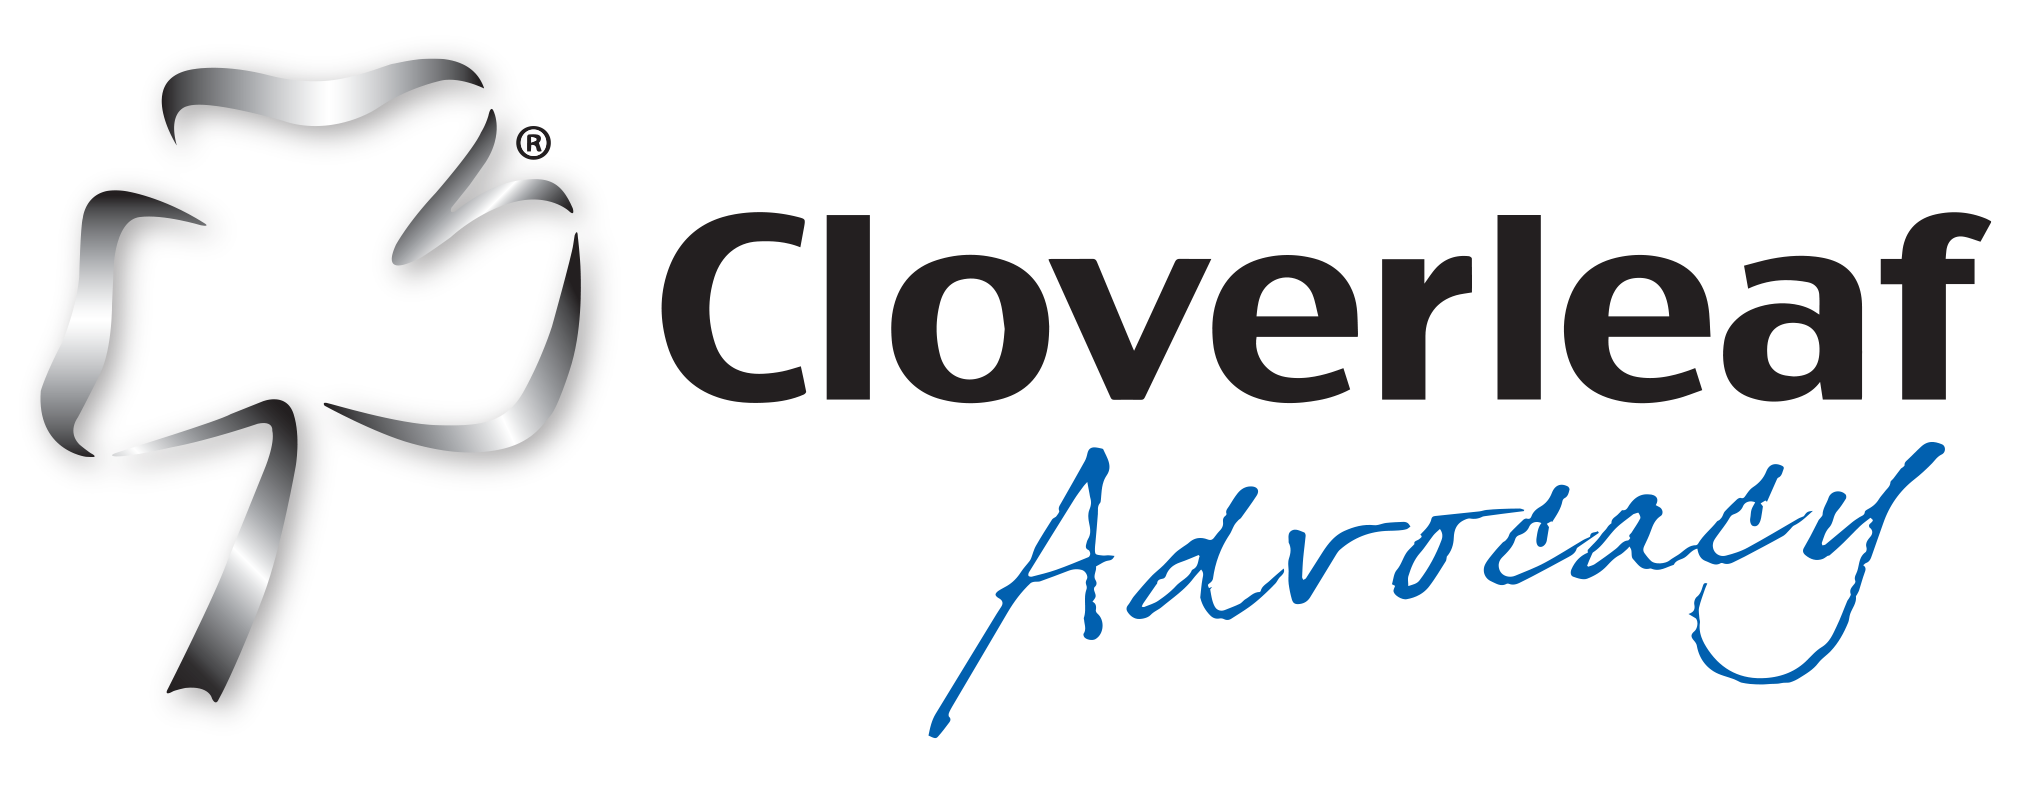 Cloverleaf Logo